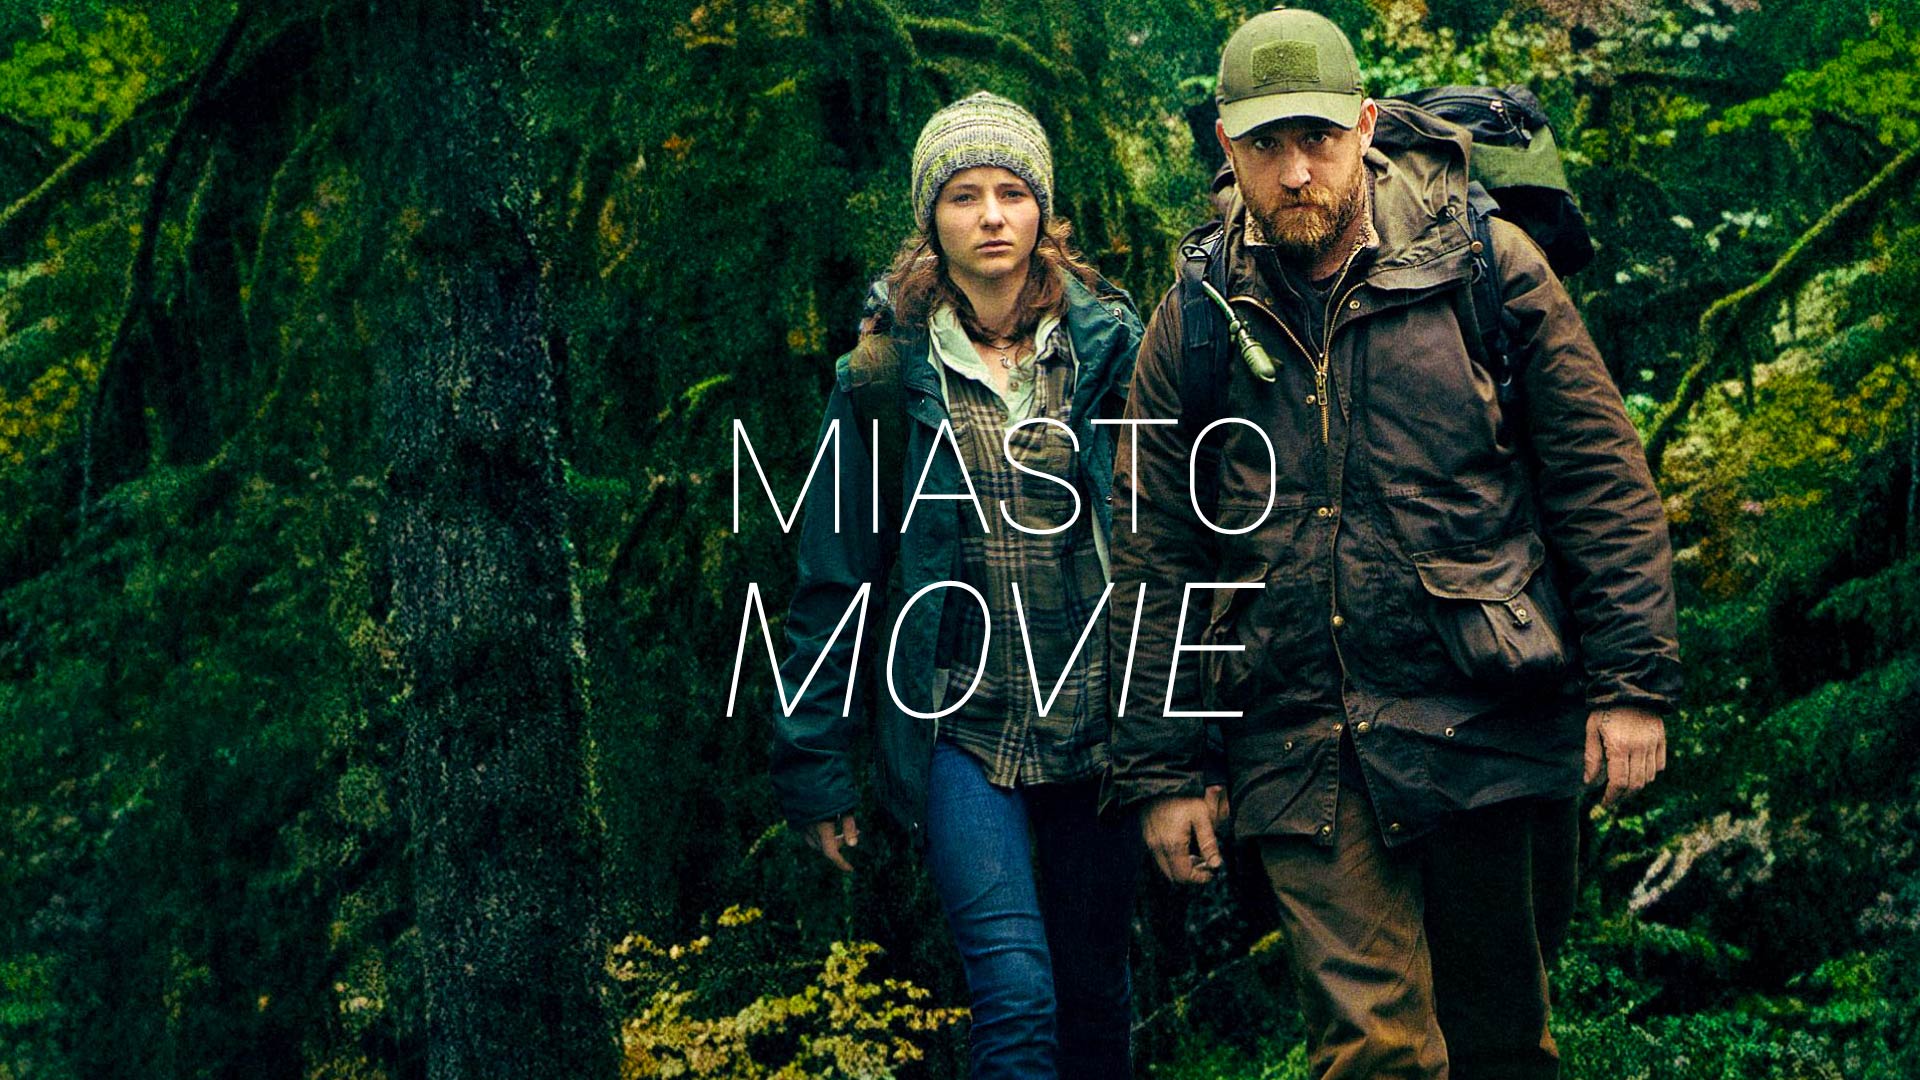 Kobieta i mężczyzna idą przez las. Na środku napis "Miasto movie".